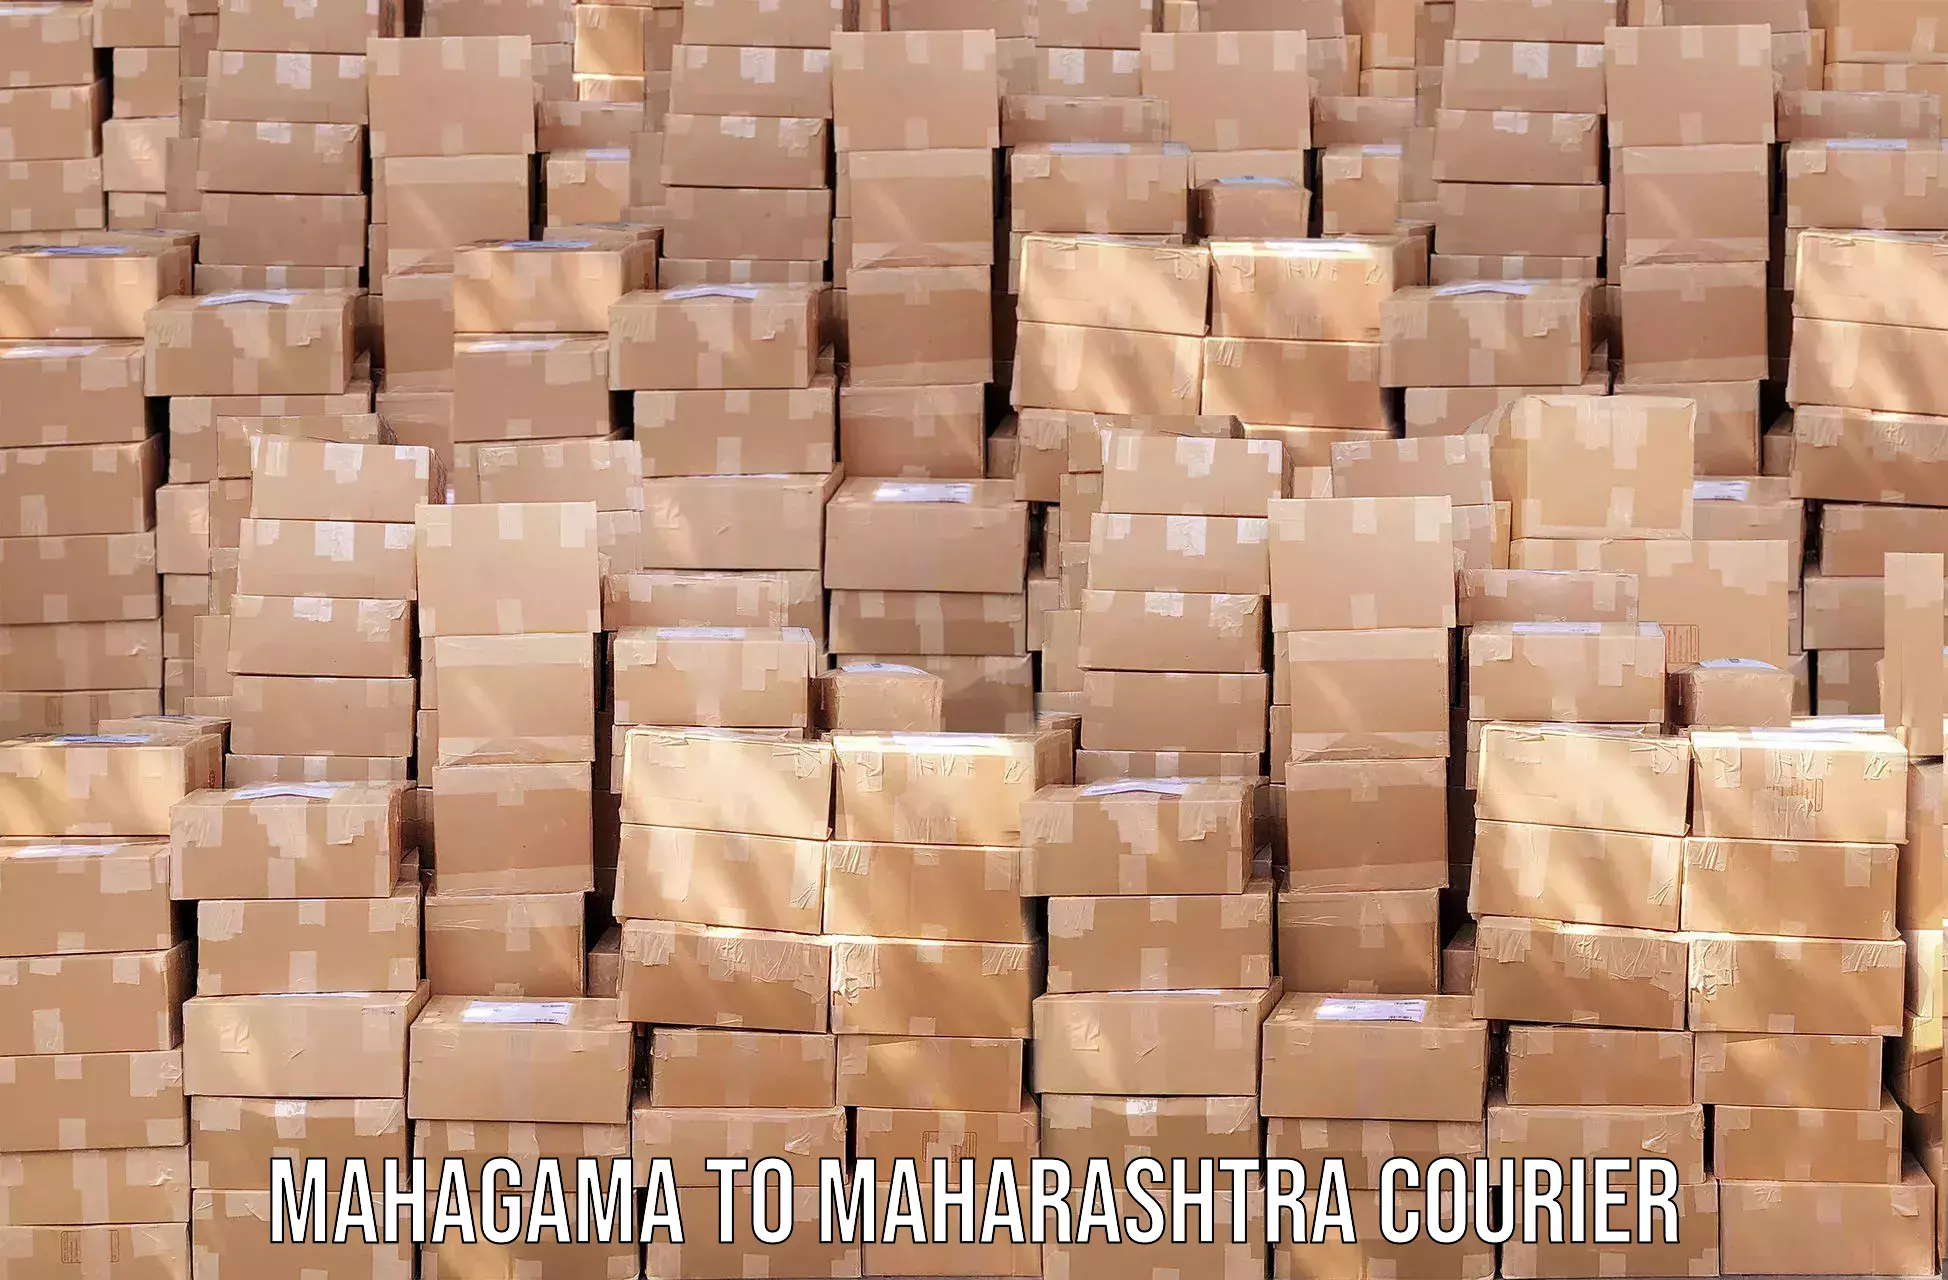 Advanced delivery network Mahagama to Maharashtra